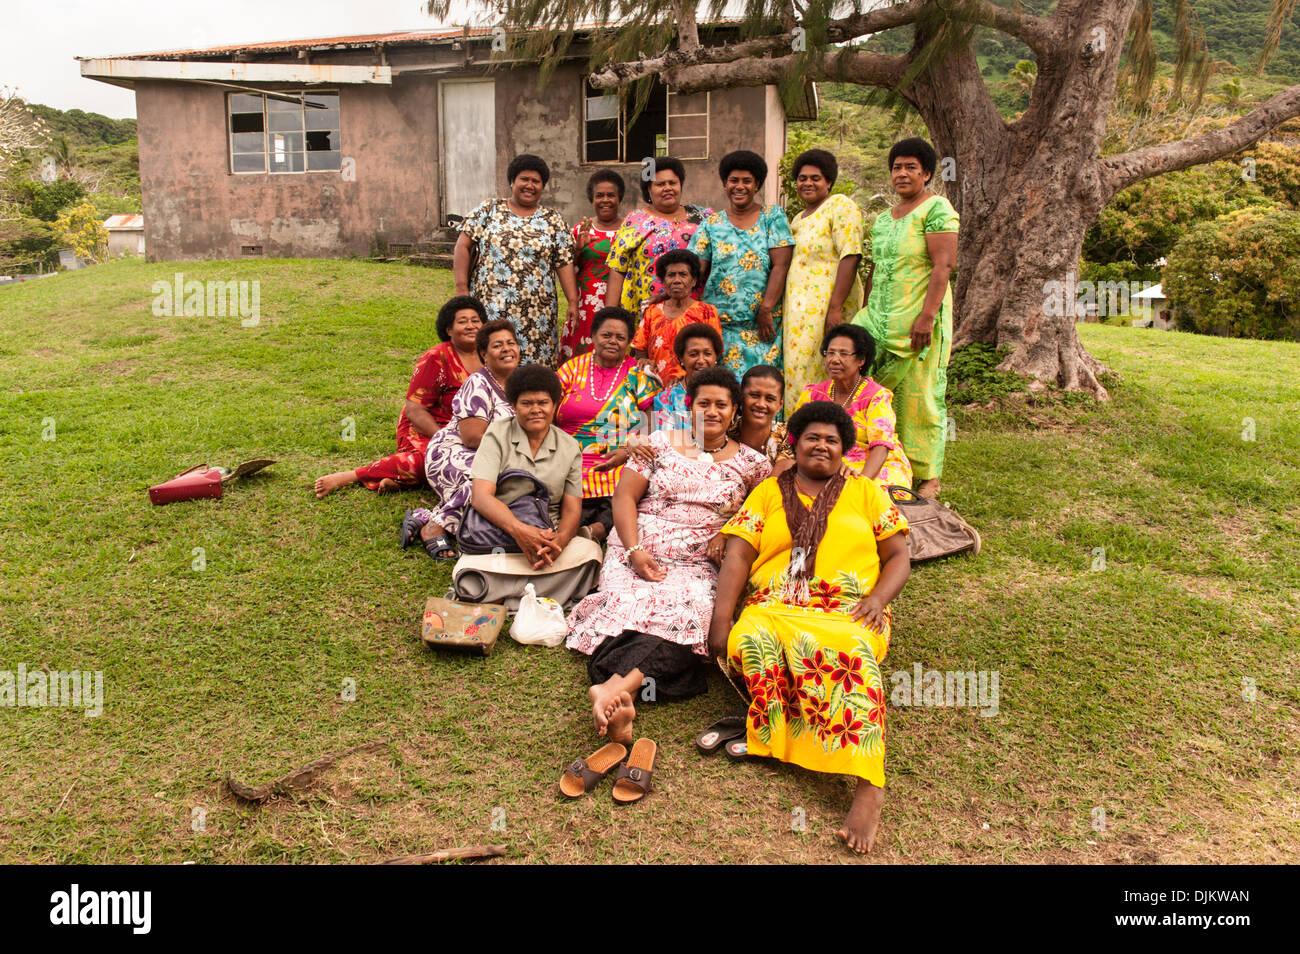 Gruppe Schuss des Matuku Frauenausschusses entspannen nachdem sie inspizierten Toiletten in Qalikarua Dorf, Matuku, Fidschi gewesen waren. Stockfoto